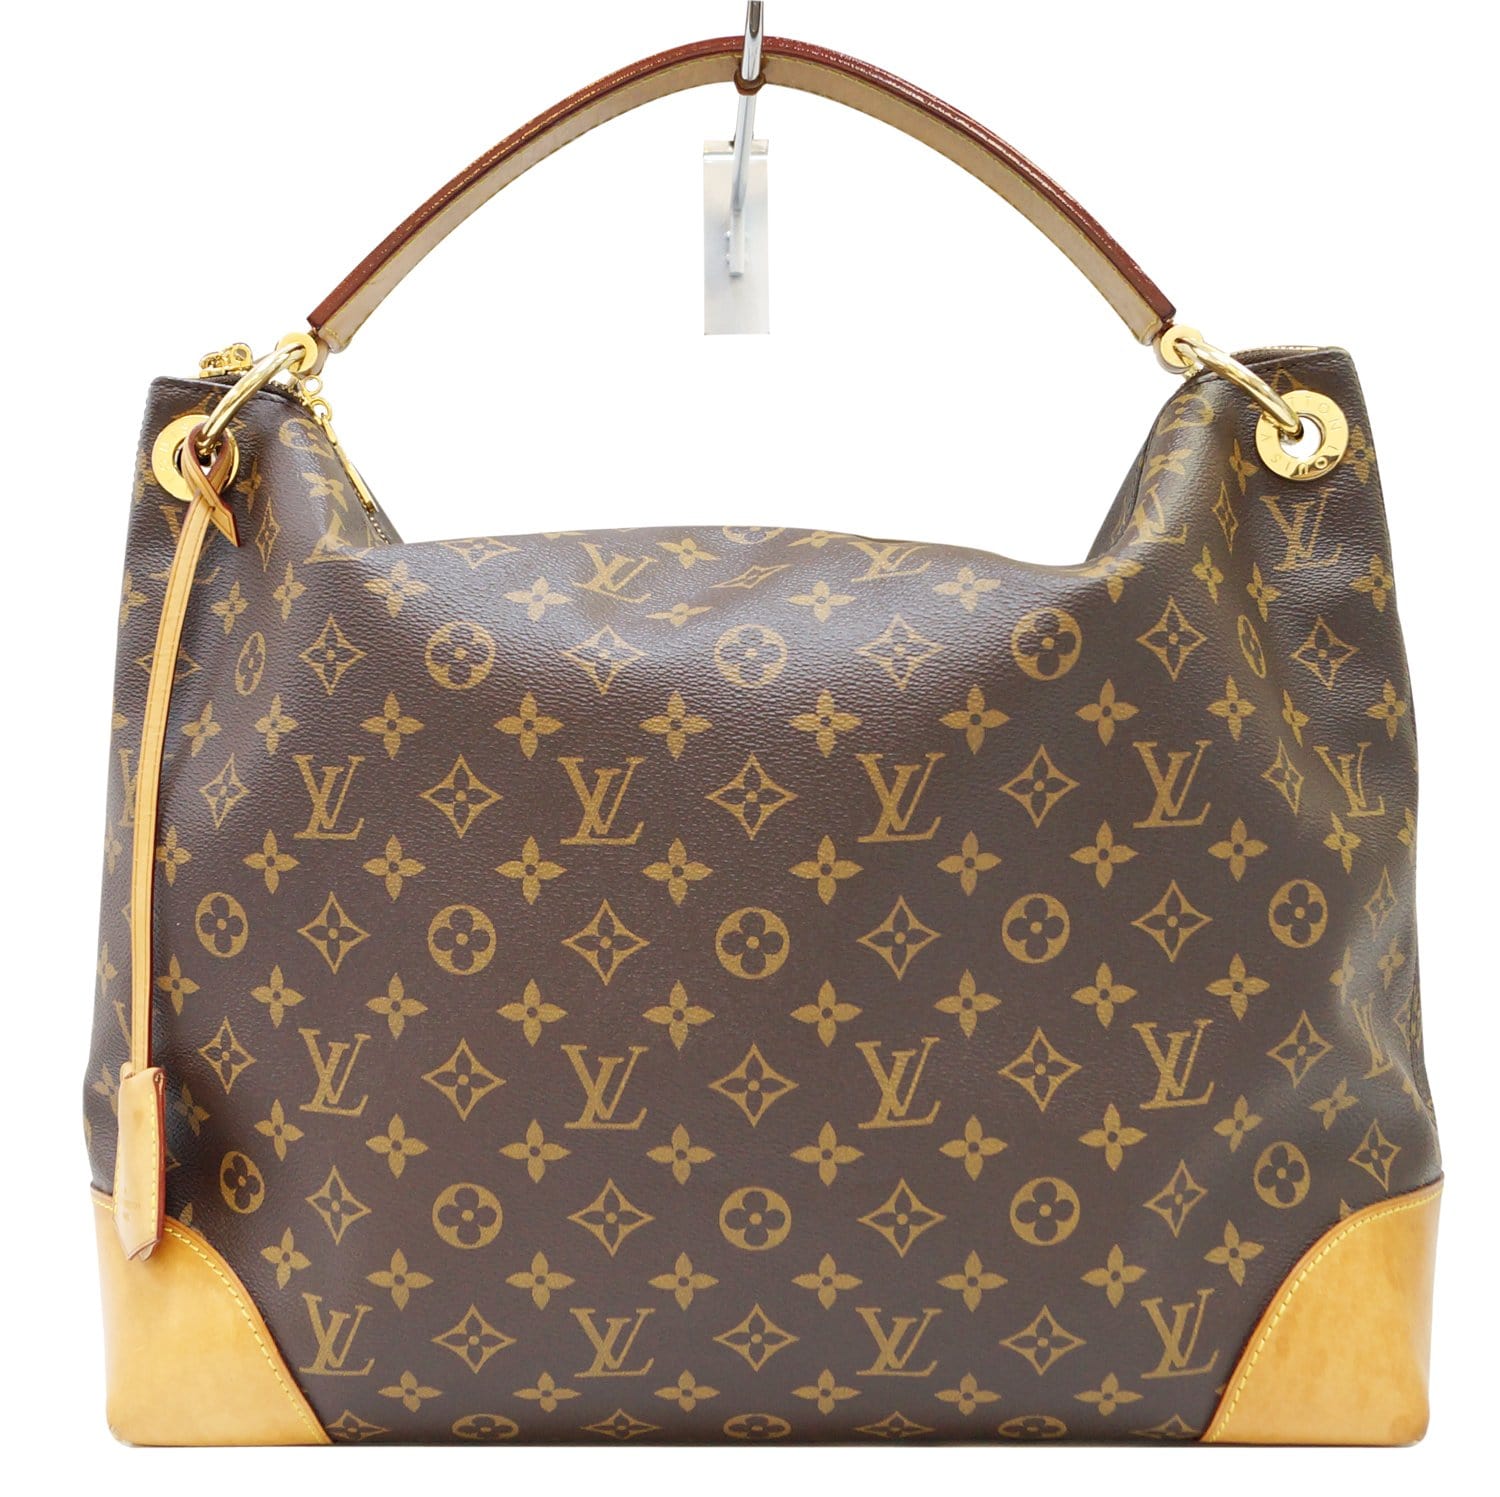 Louis Vuitton Handbags Photos | Paul Smith